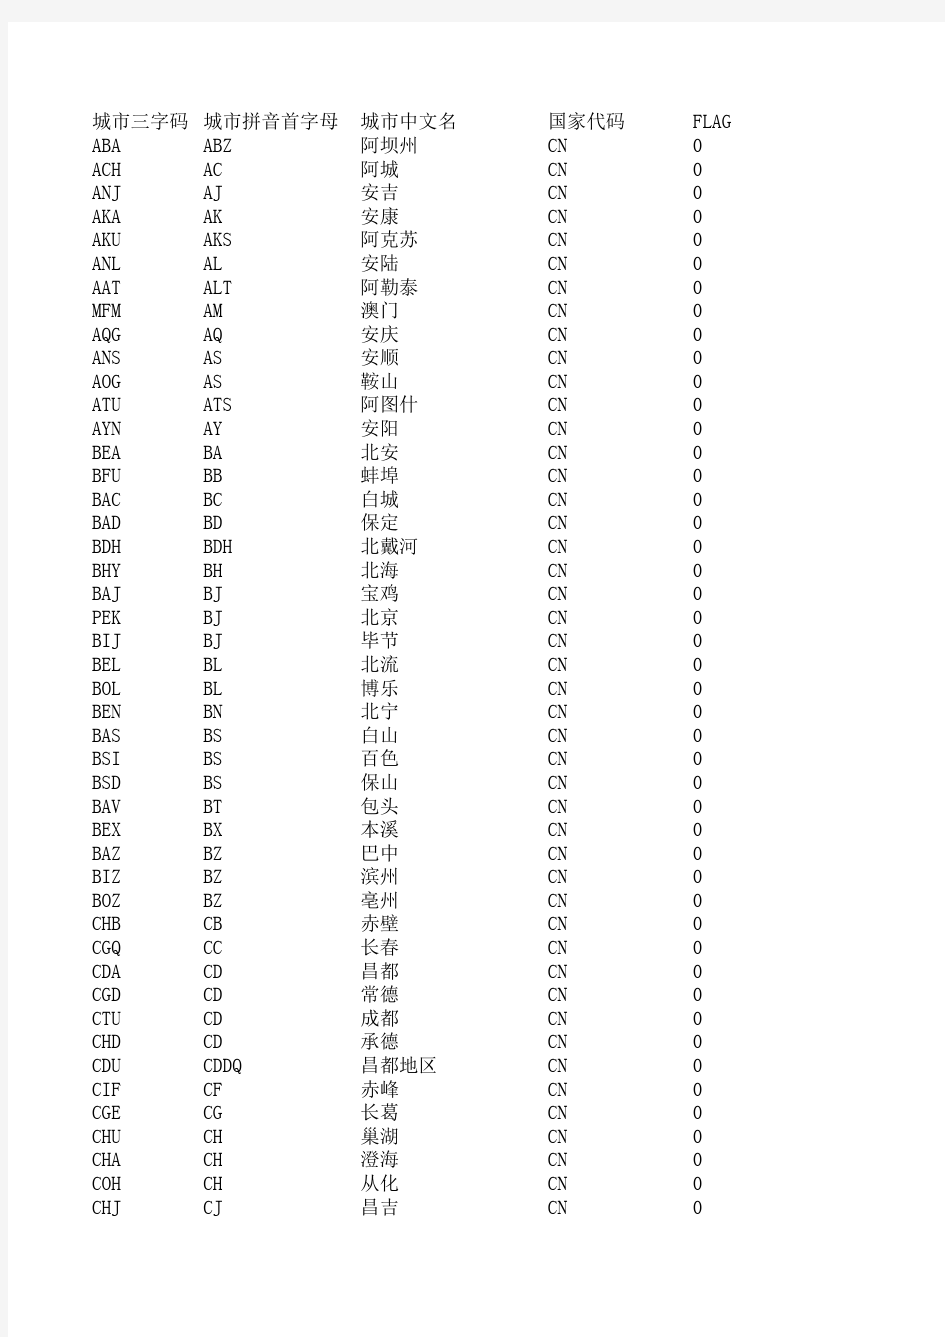 中国城市三字代码及所属省份表